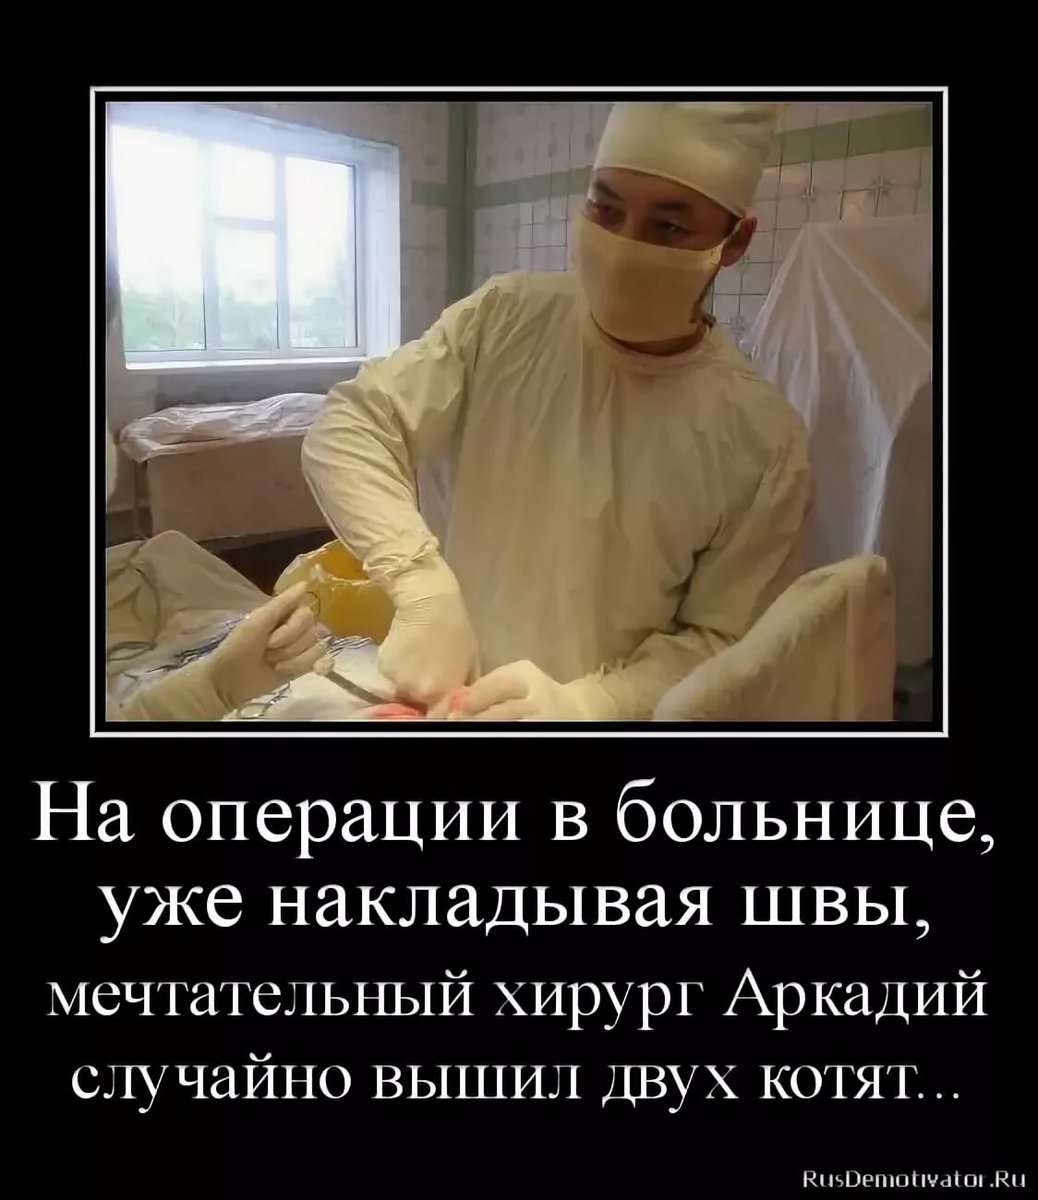 Что говорят перед операцией. Смешное про медиков. Анекдоты про операцию.